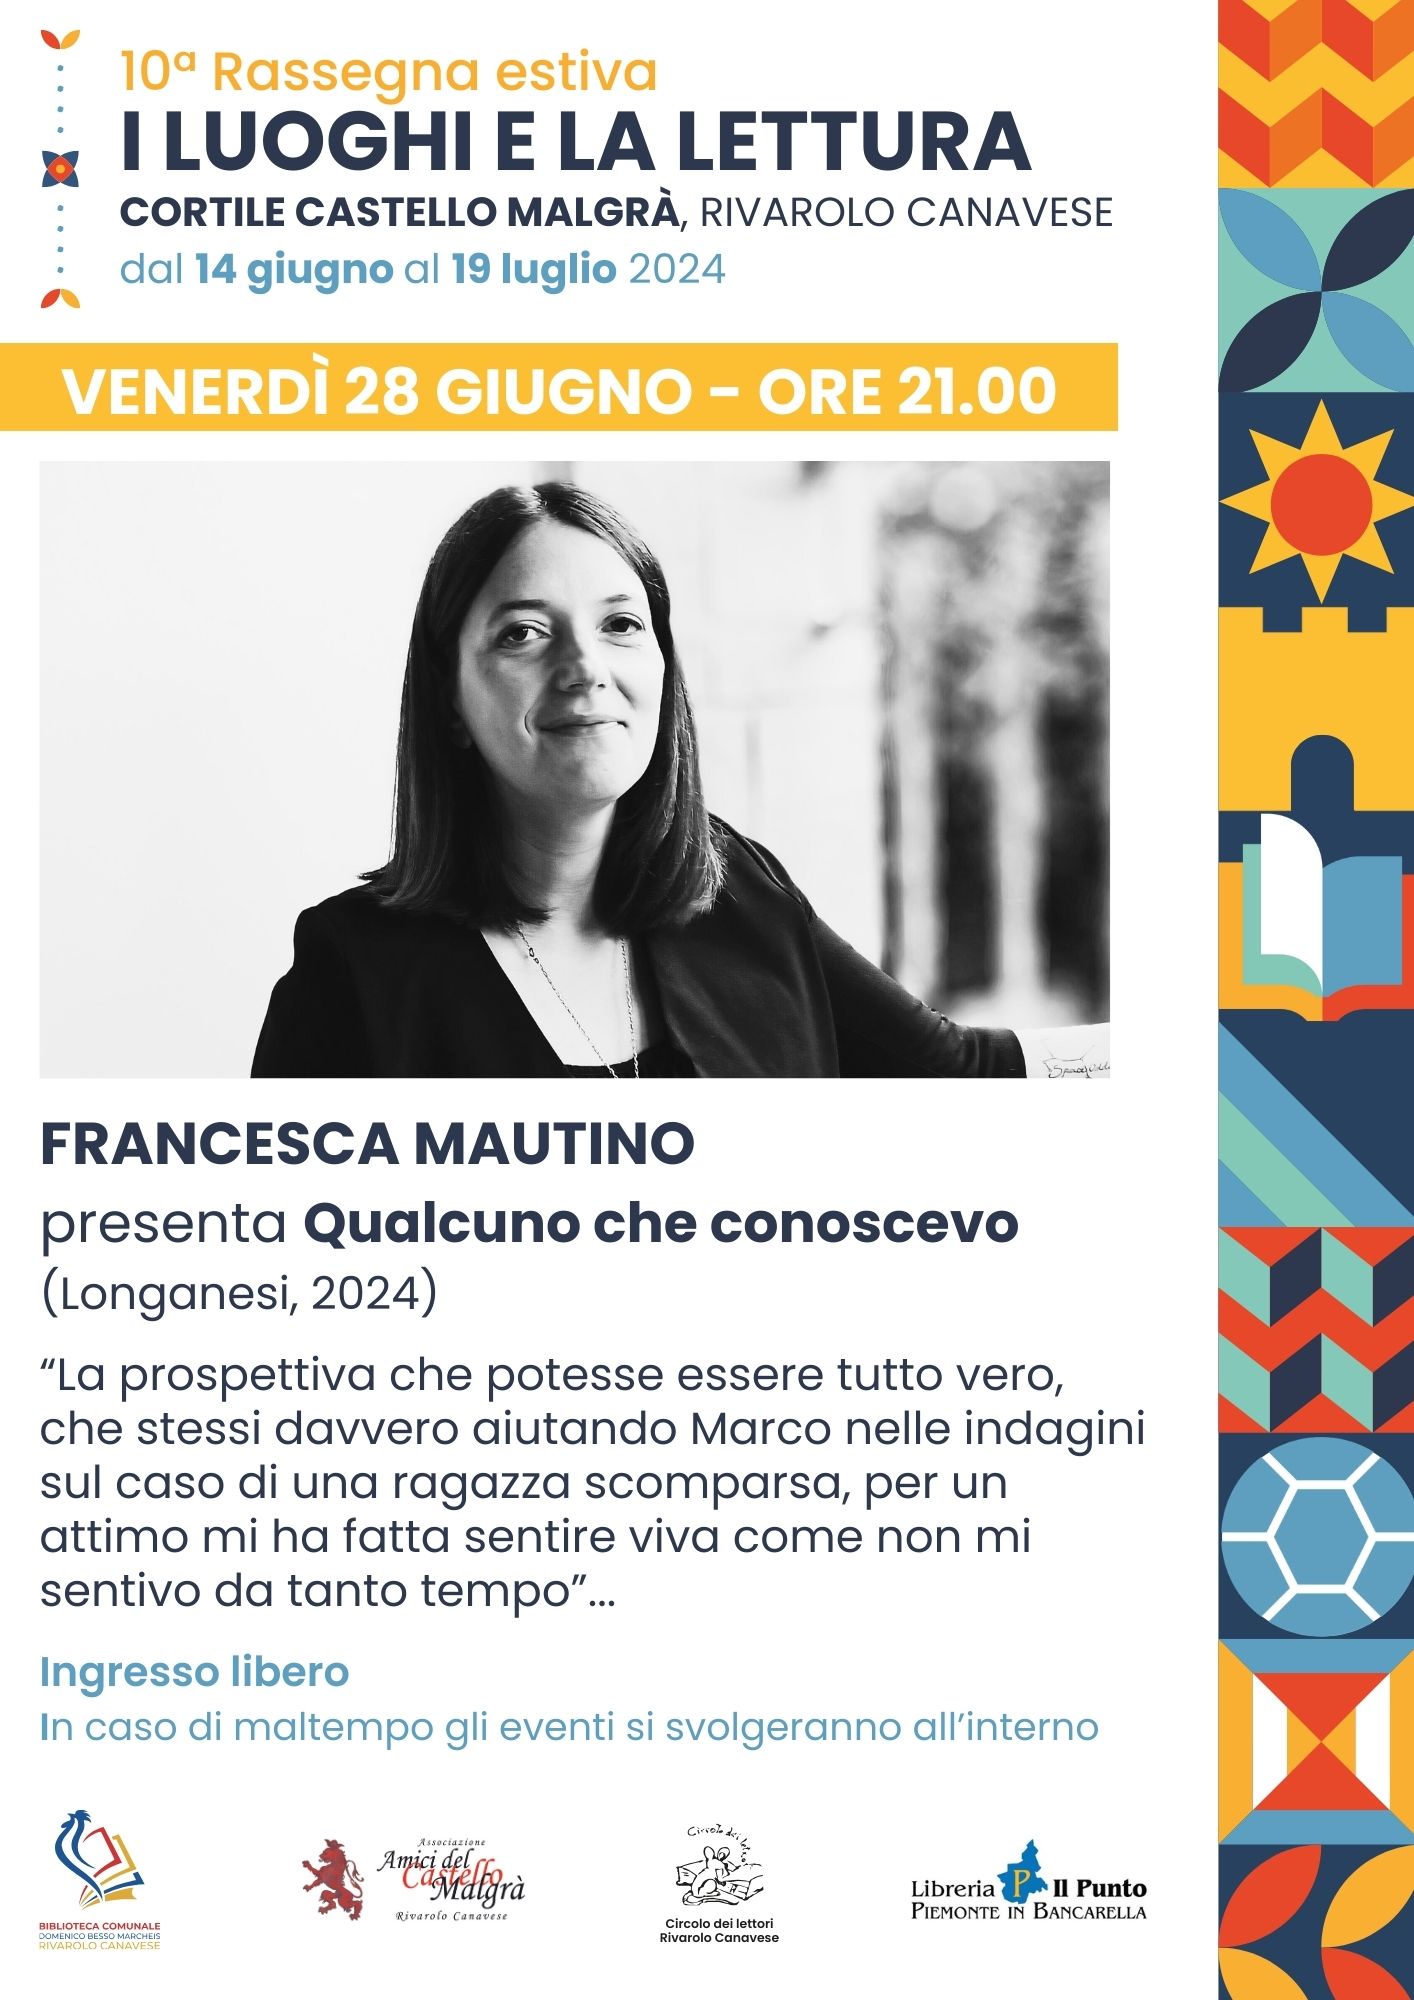 Francesca Mautino